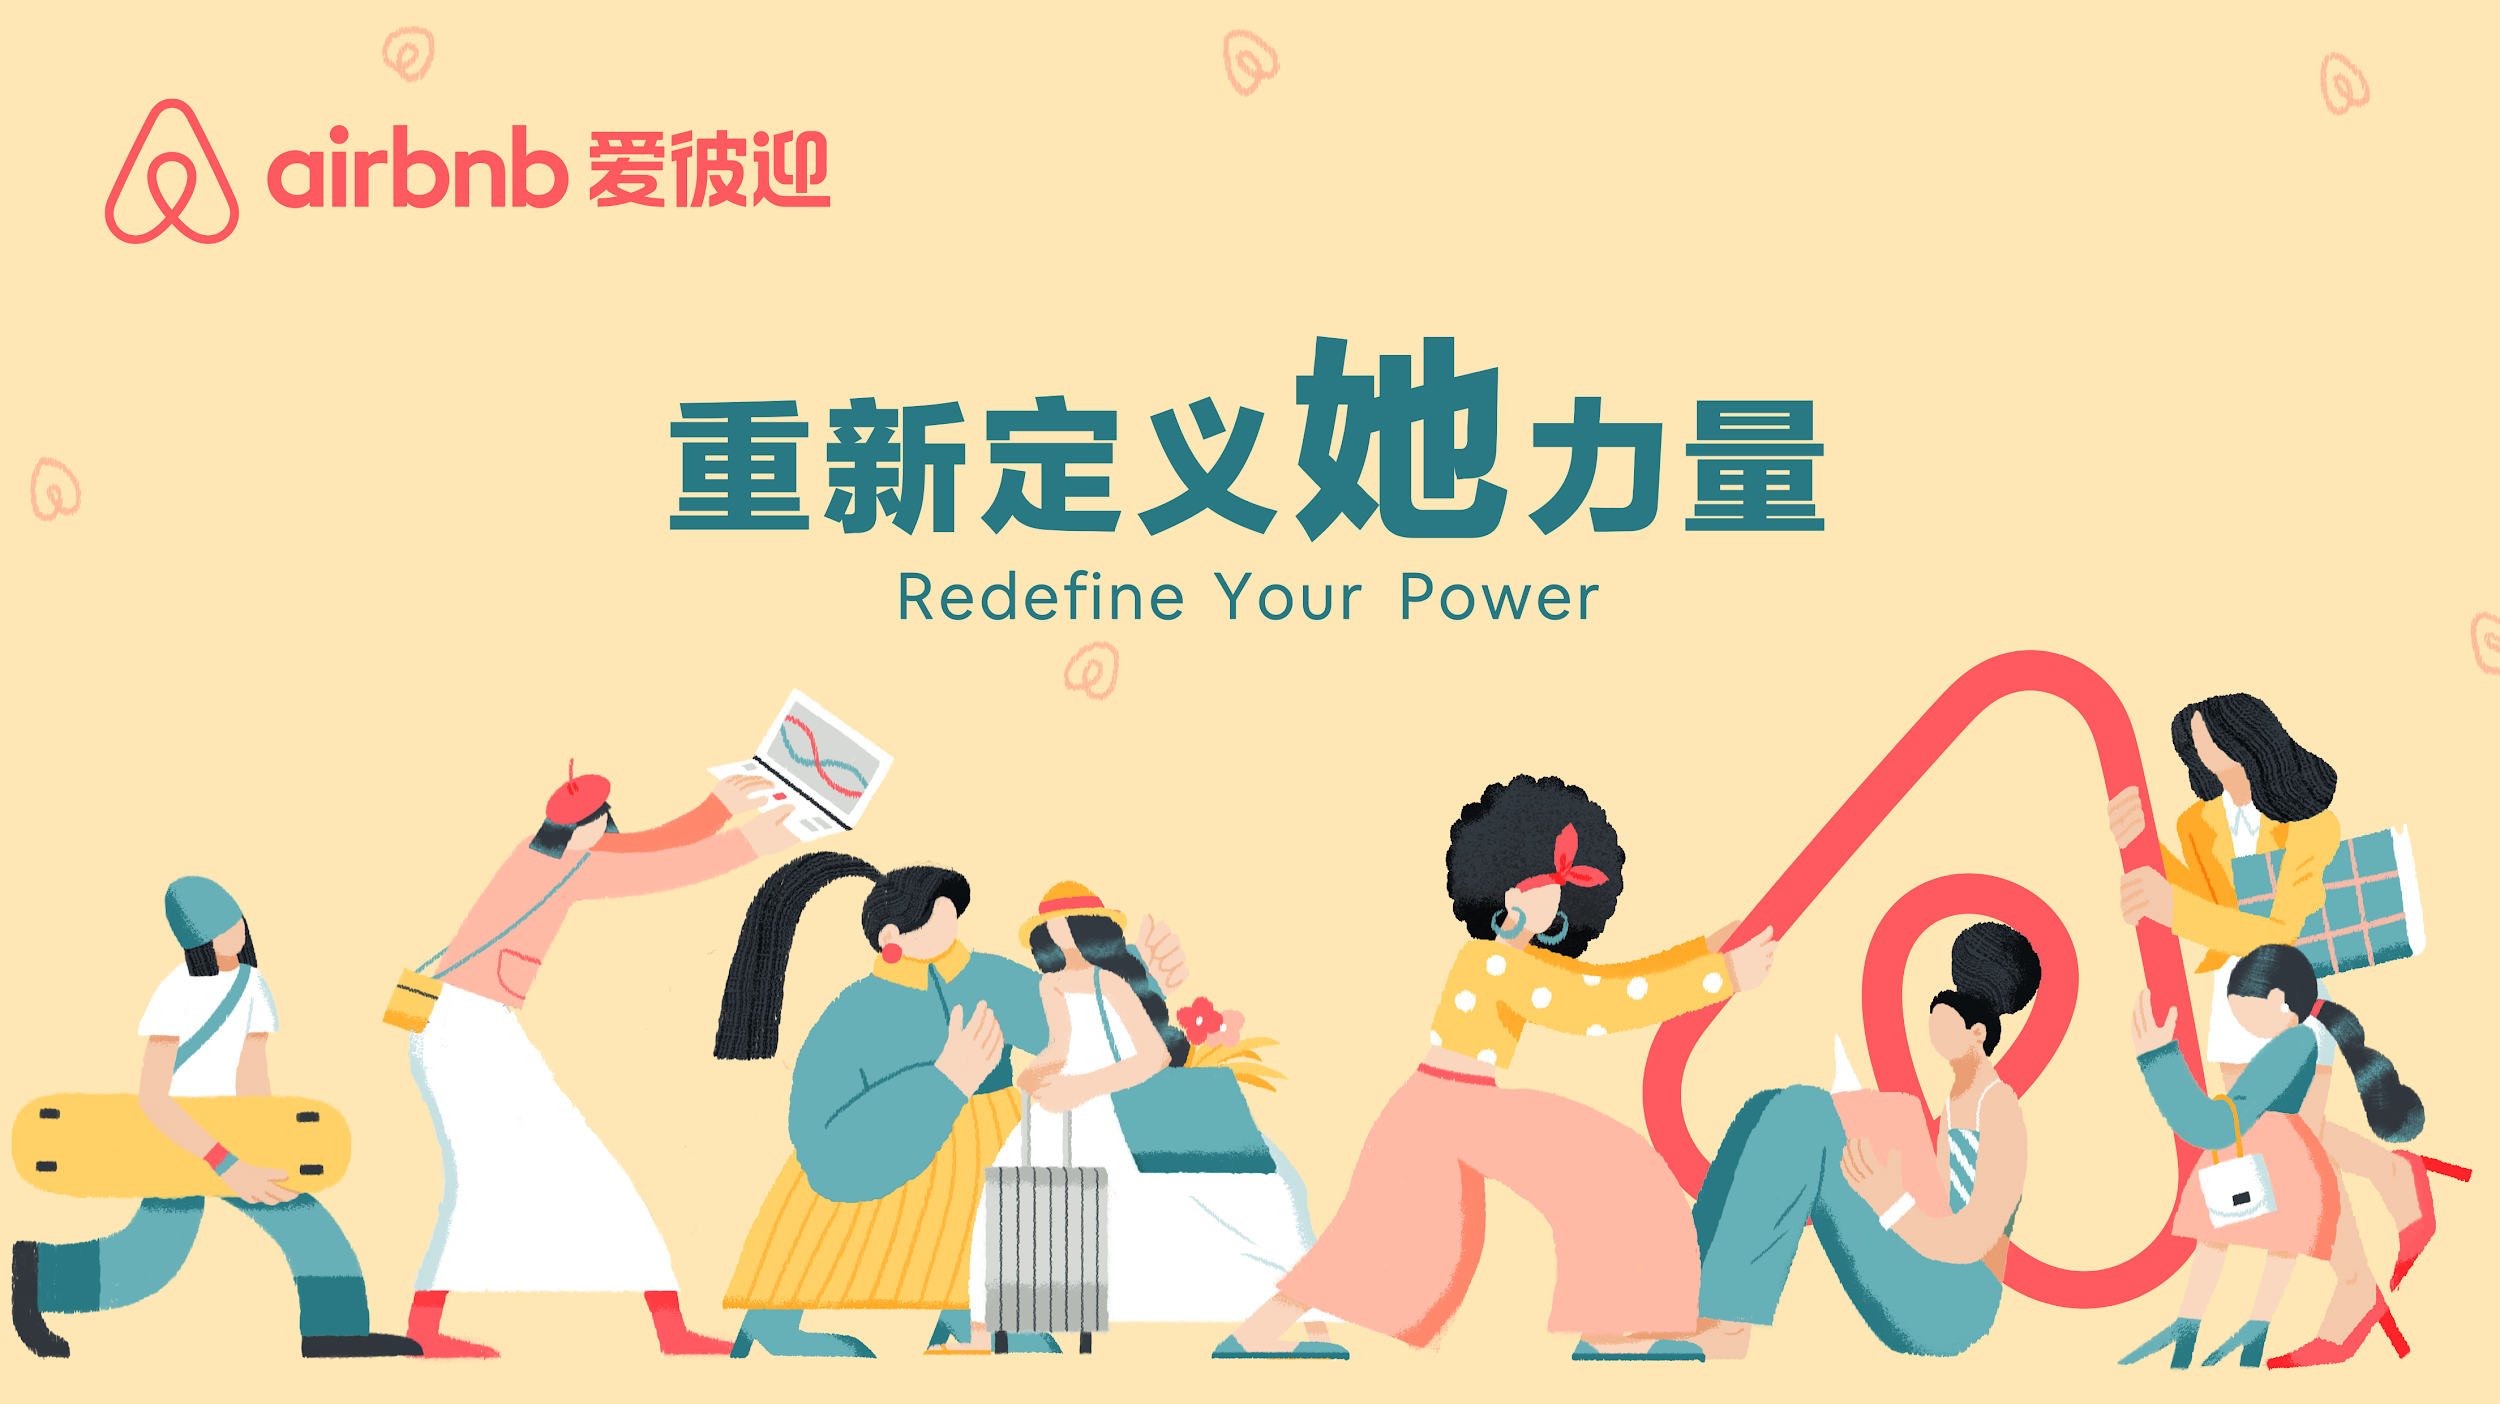 爱彼迎发布《Airbnb爱彼迎中国女性社区》报告